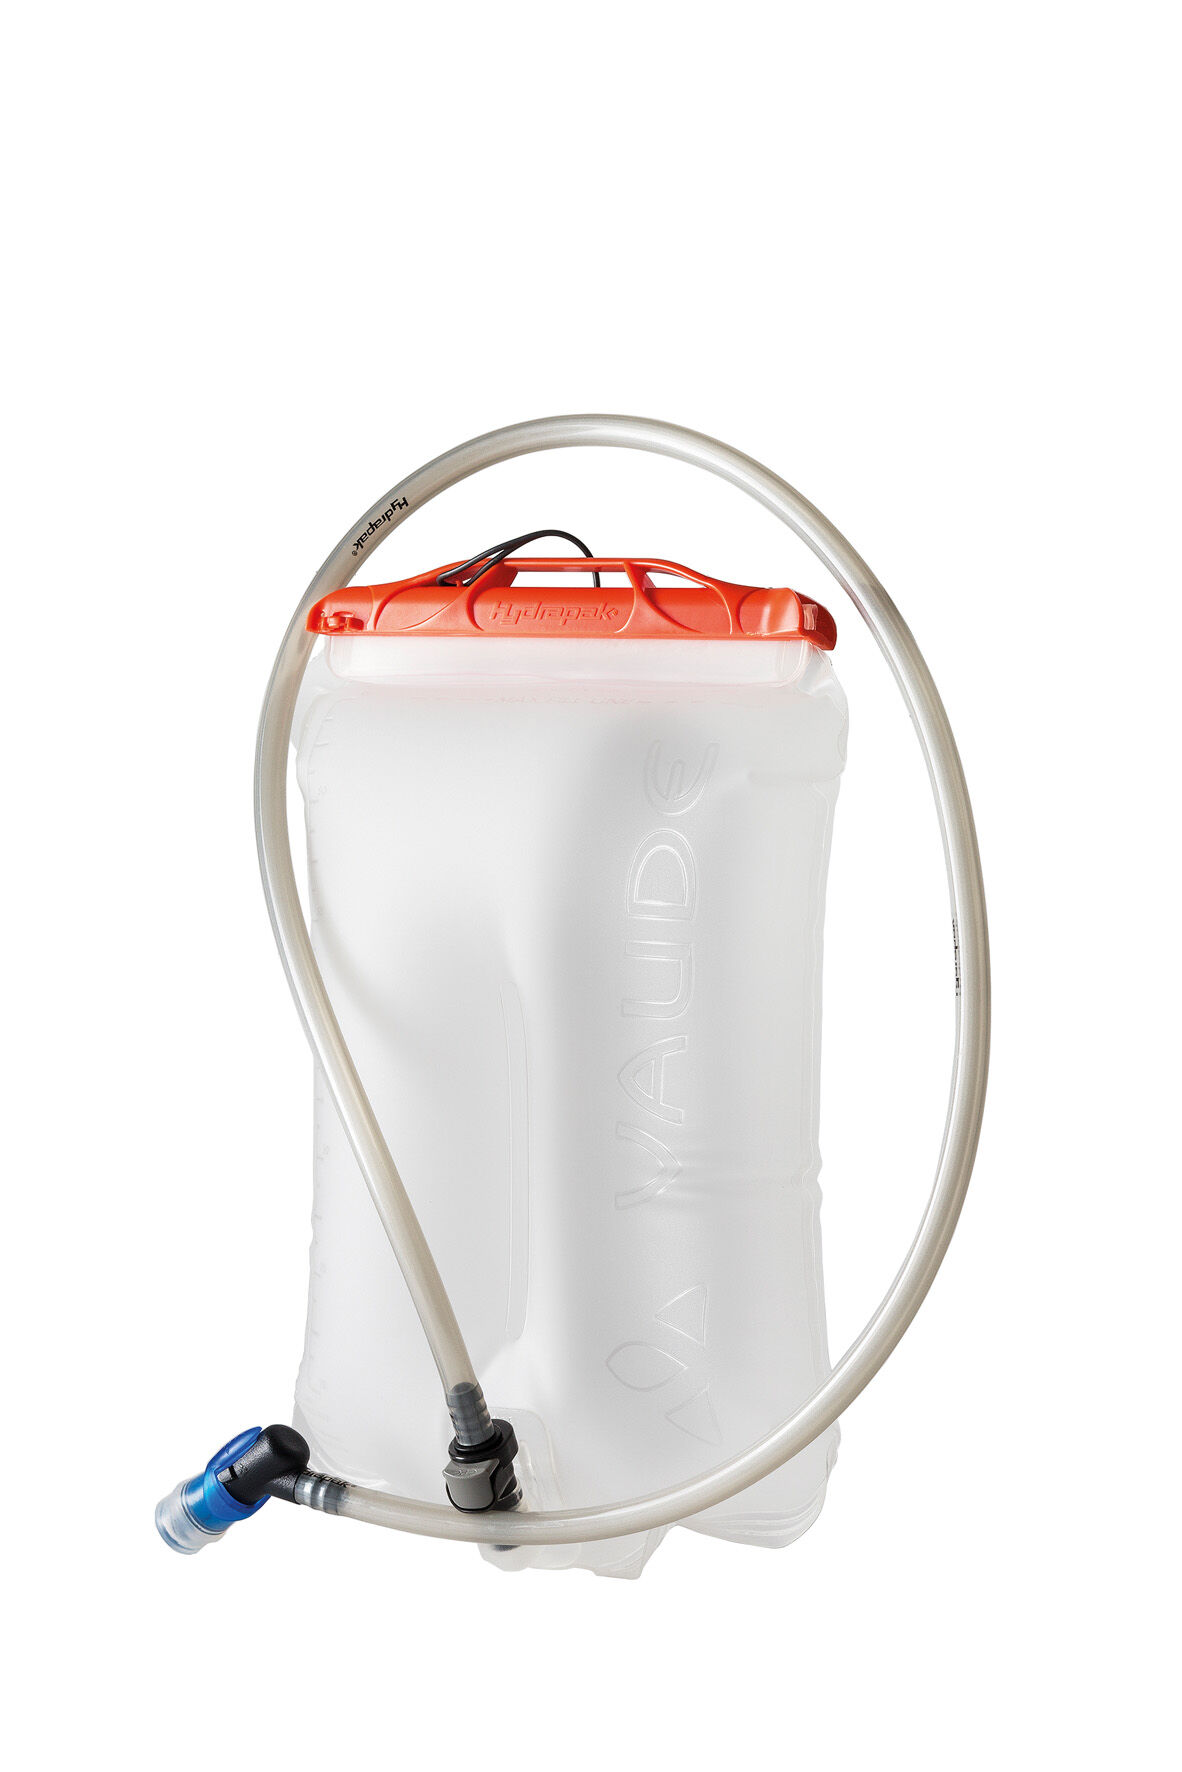 Vaude - Aquarius Pro 2.0 - Sistema de hidratación